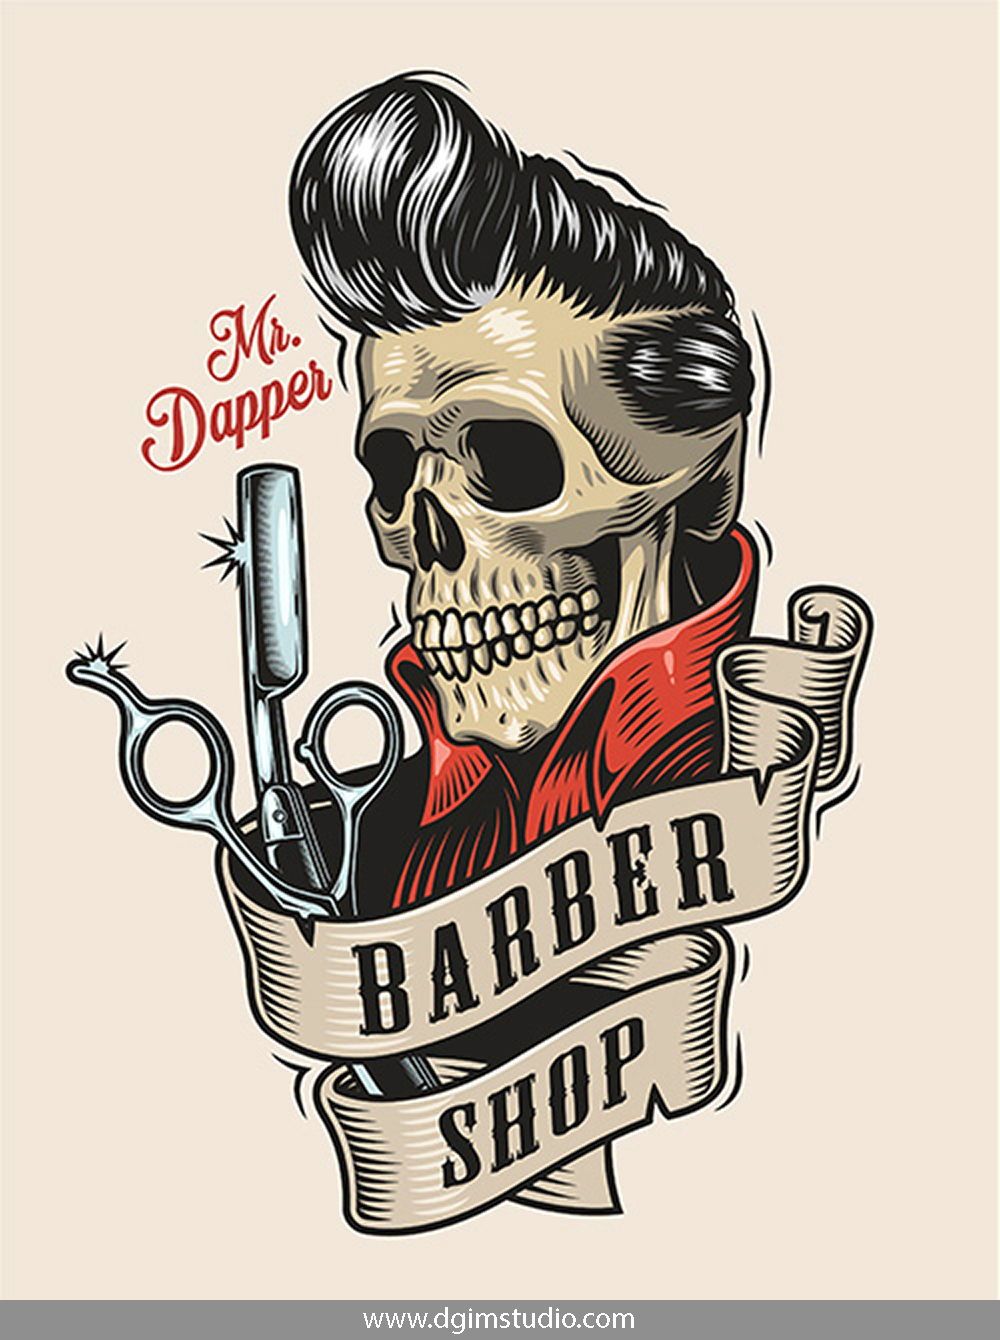 Gambar Gambar Barbershop - KibrisPDR